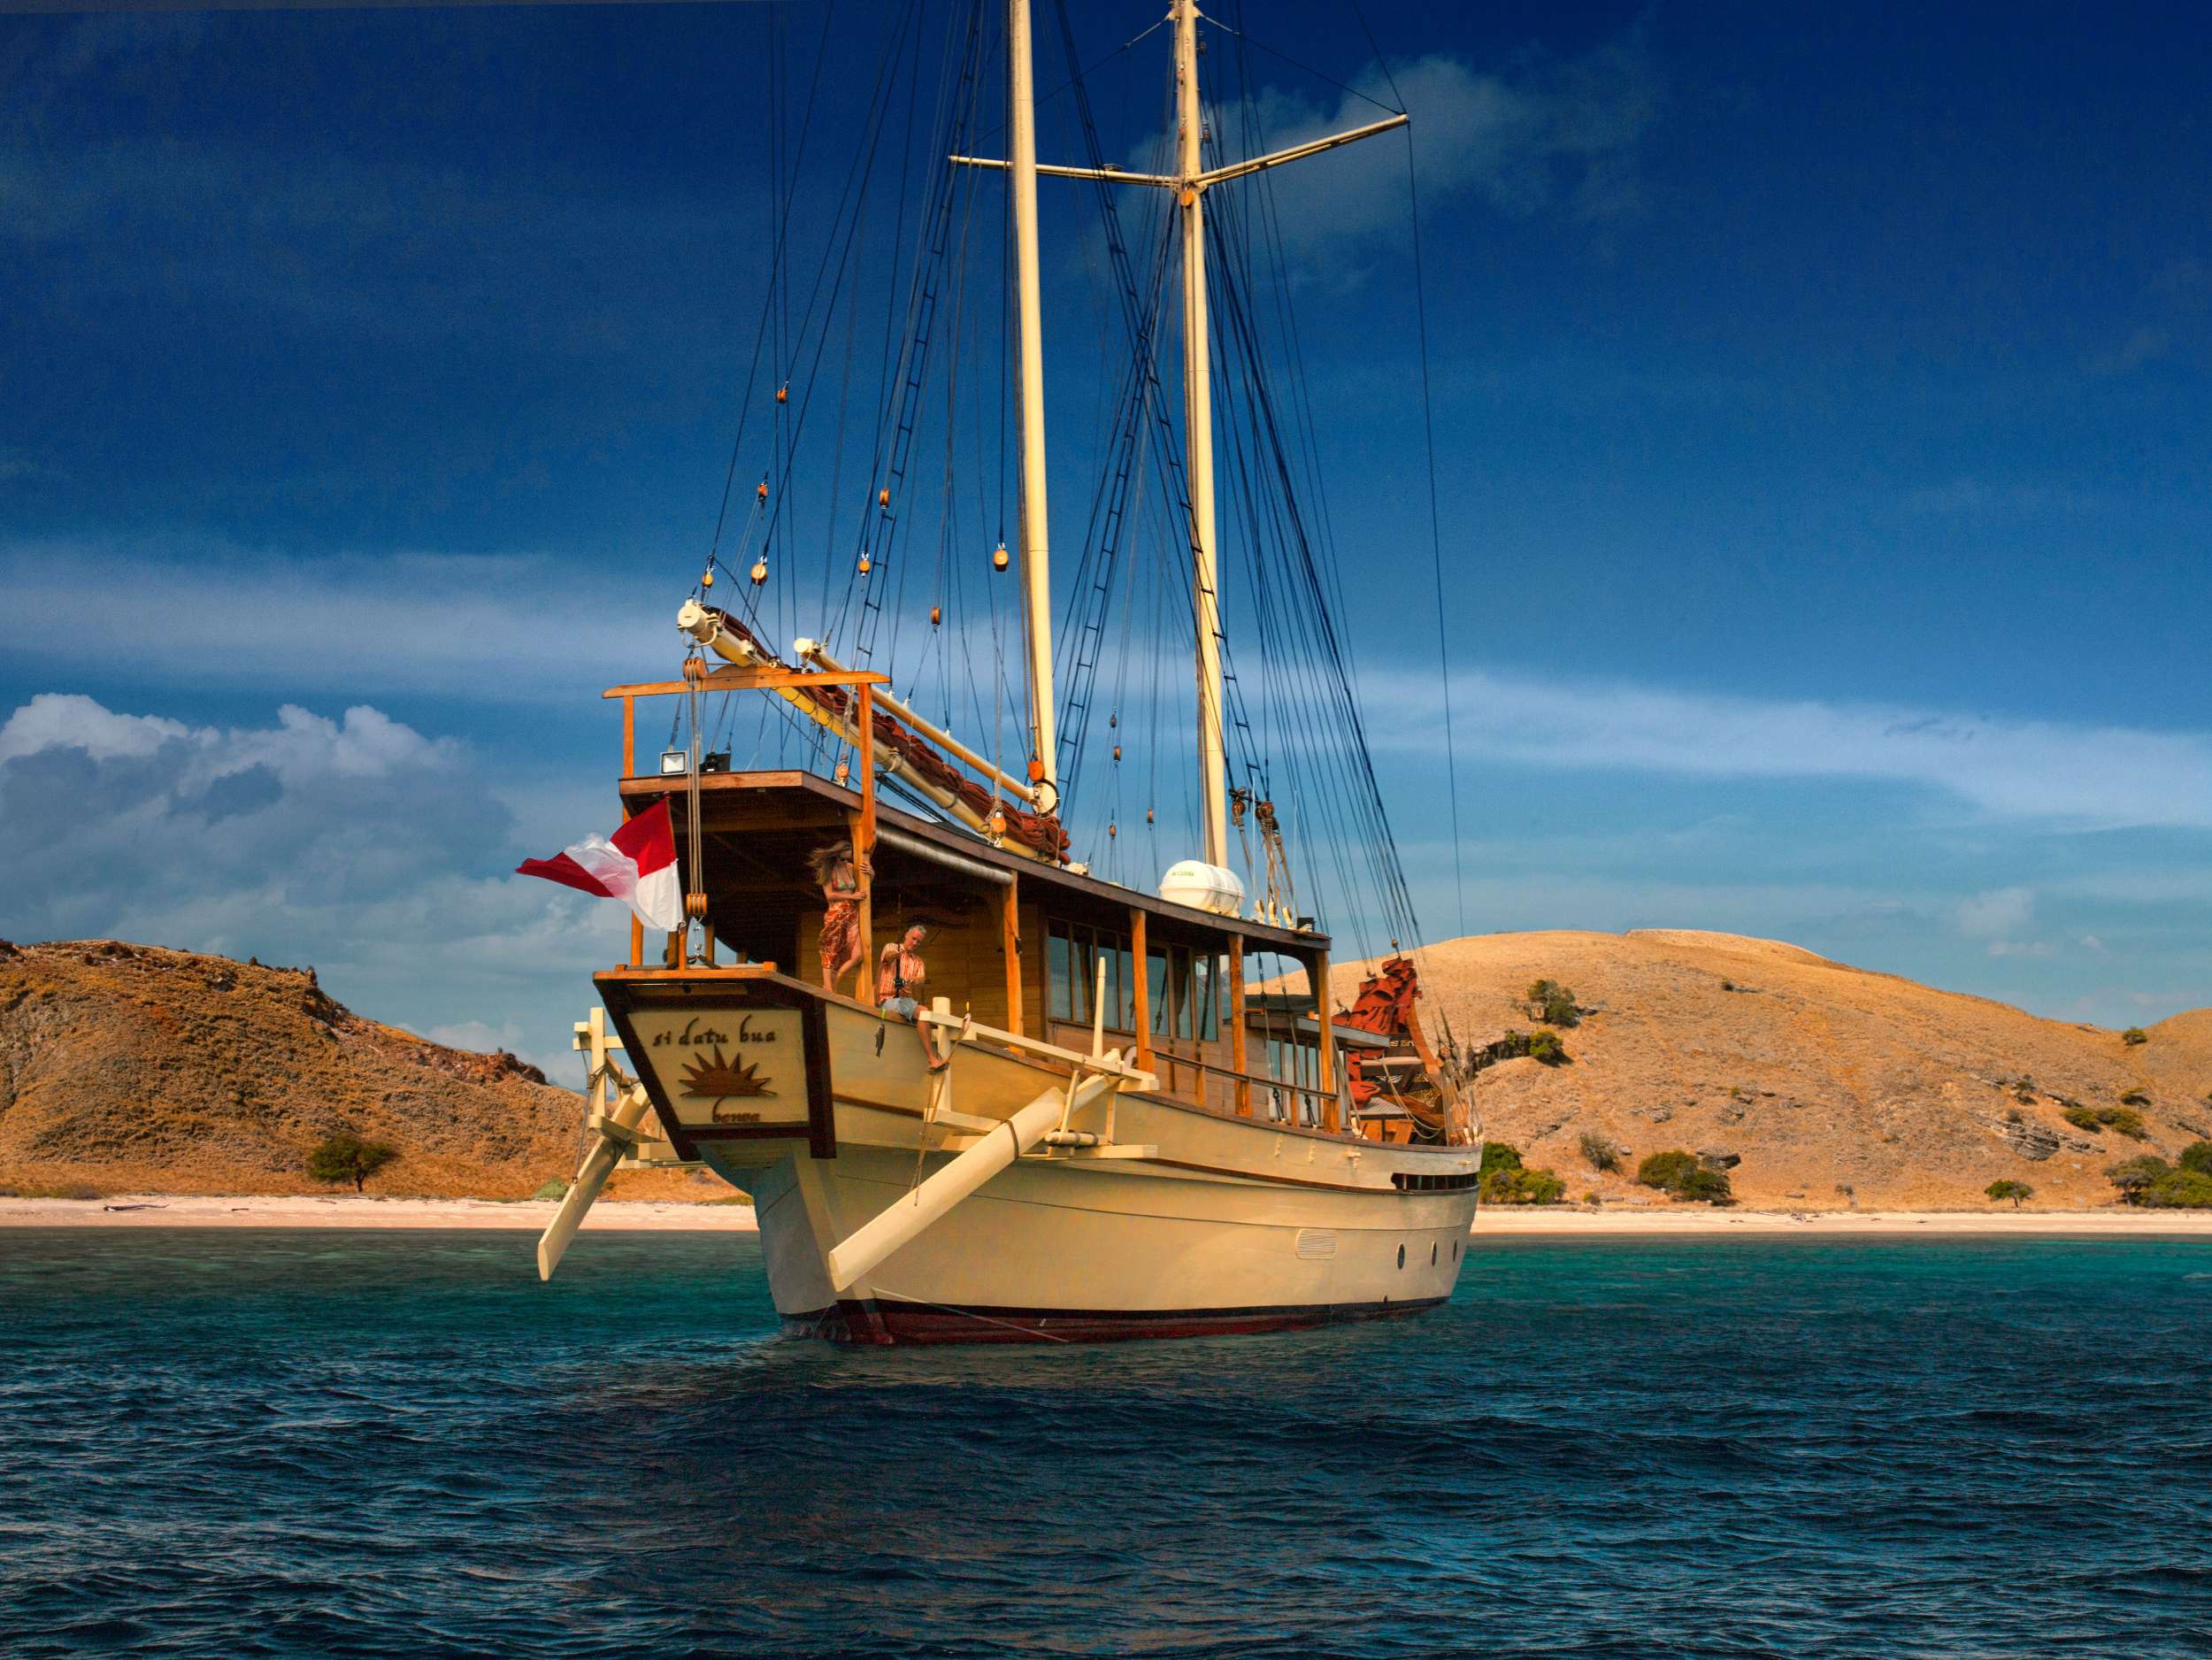 Si Datu Bua Yacht Charter - At anchor